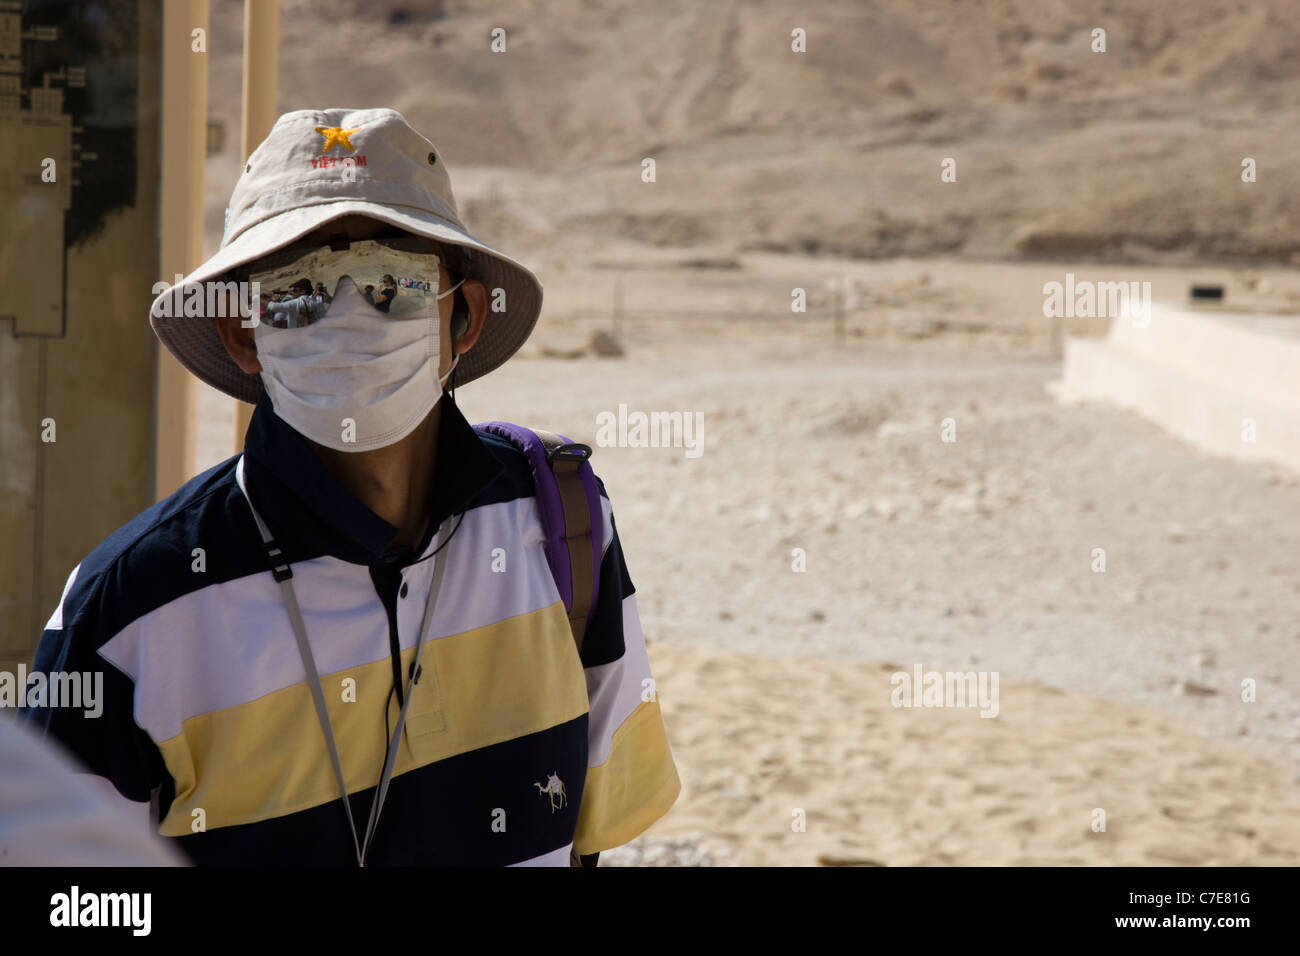 Un touriste japonais avec masque de visage au temple d'Hatshepsout, Luxor, Egypte Banque D'Images